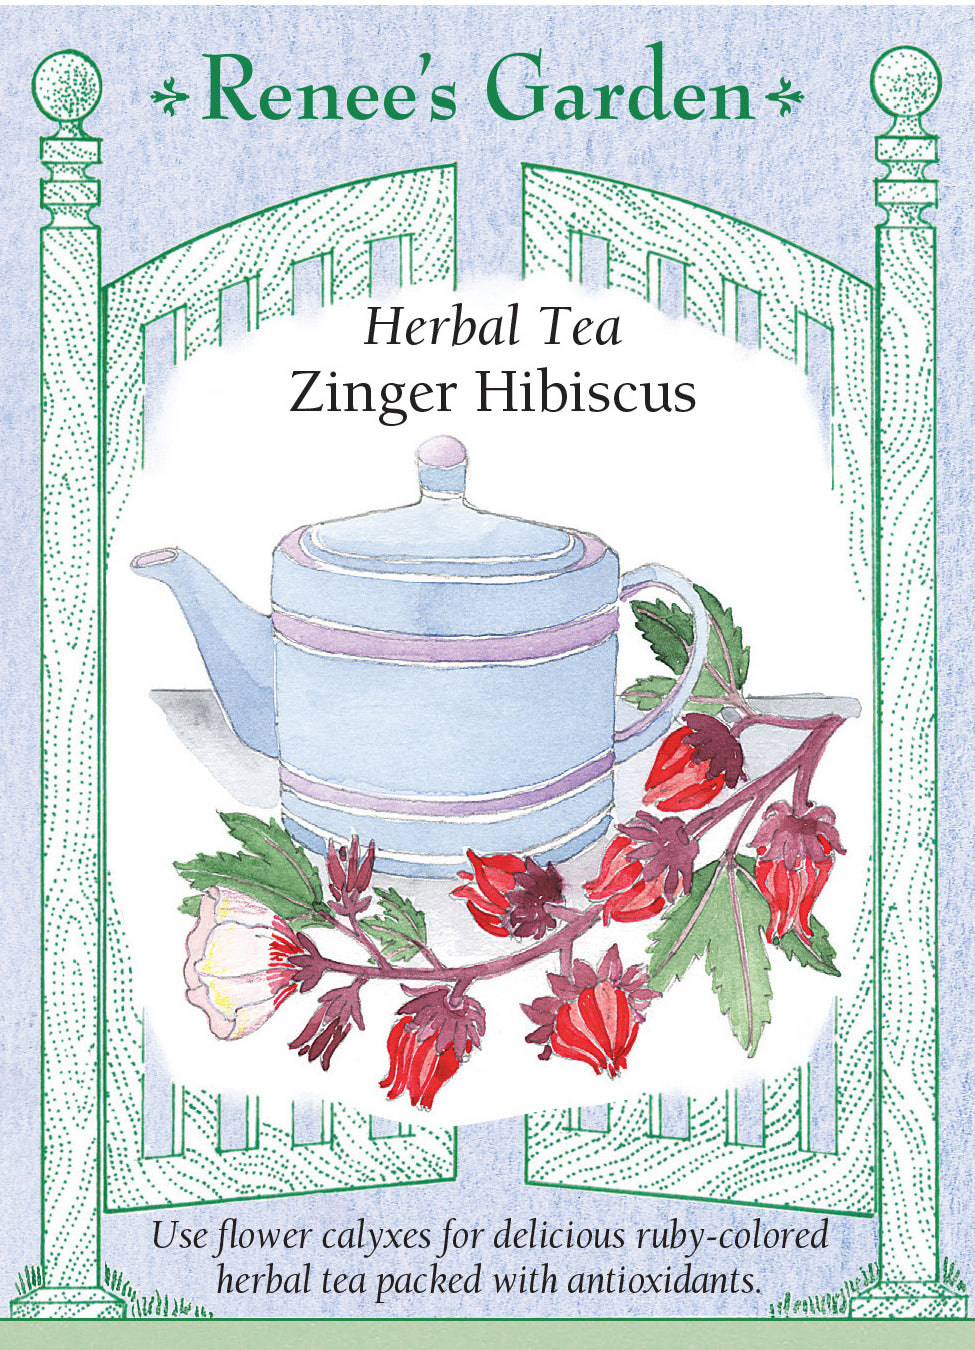 Zinger Hibiscus